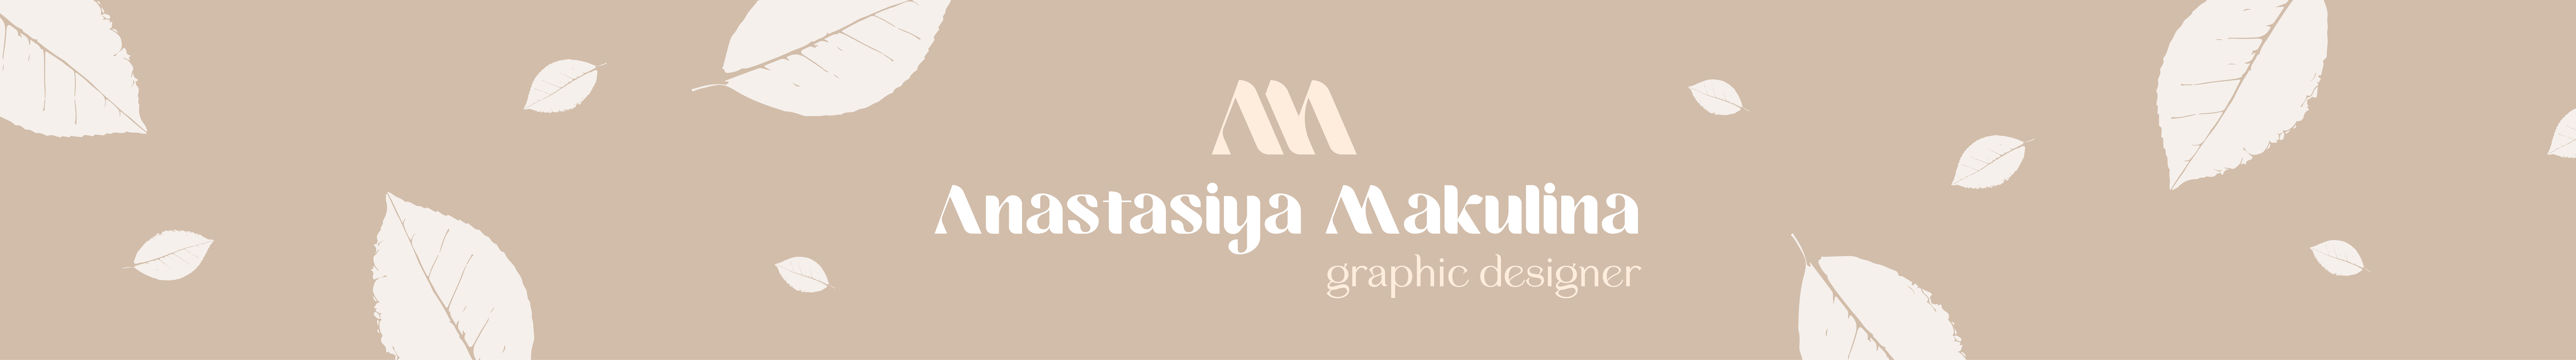 Anastasiya Makulina's profile banner